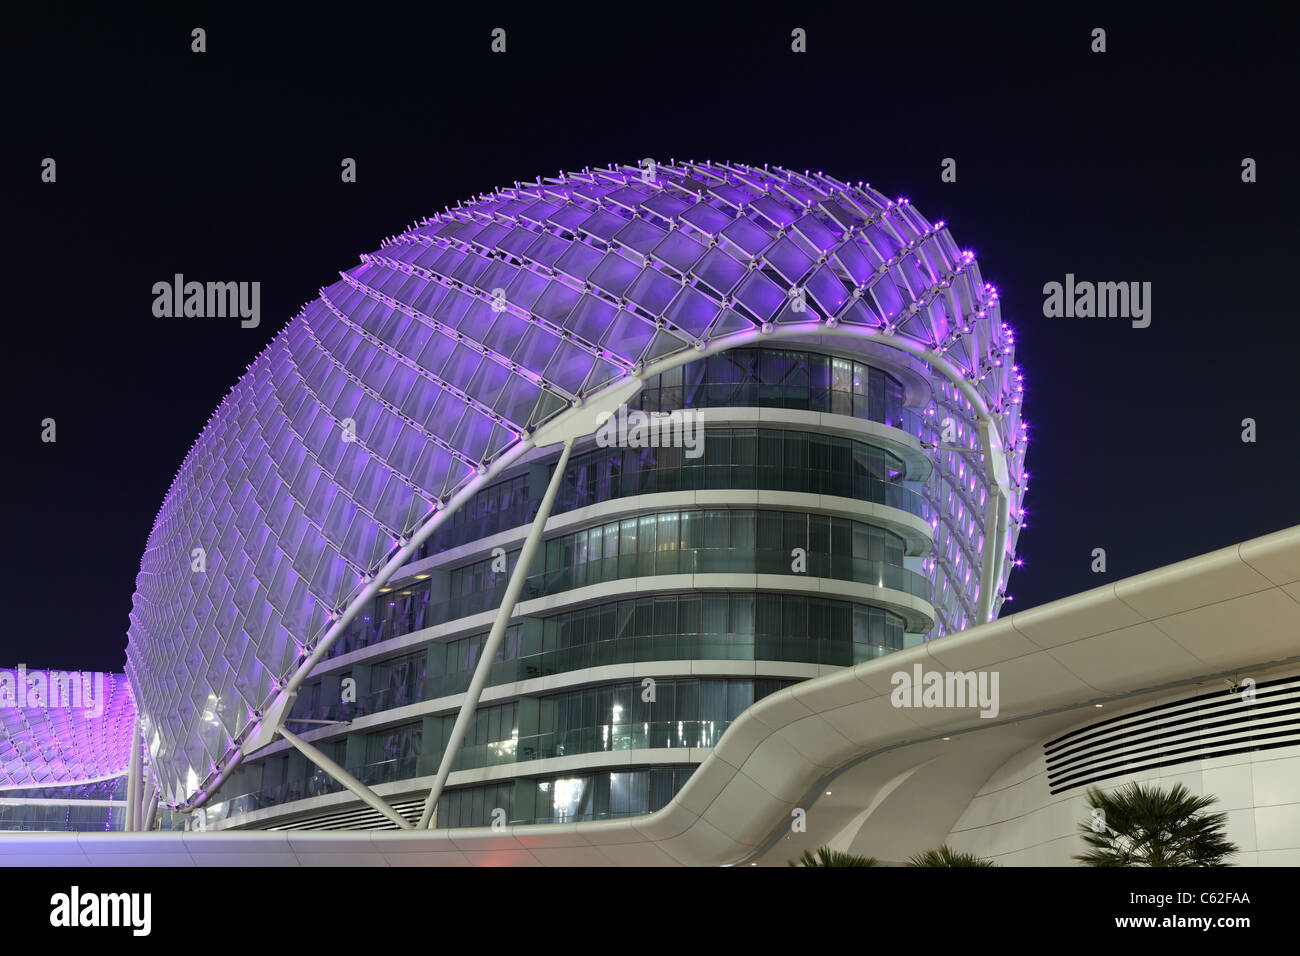 Yas Marina Hotel beleuchtet in der Nacht, Abu Dhabi Vereinigte Arabische Emirate Stockfoto